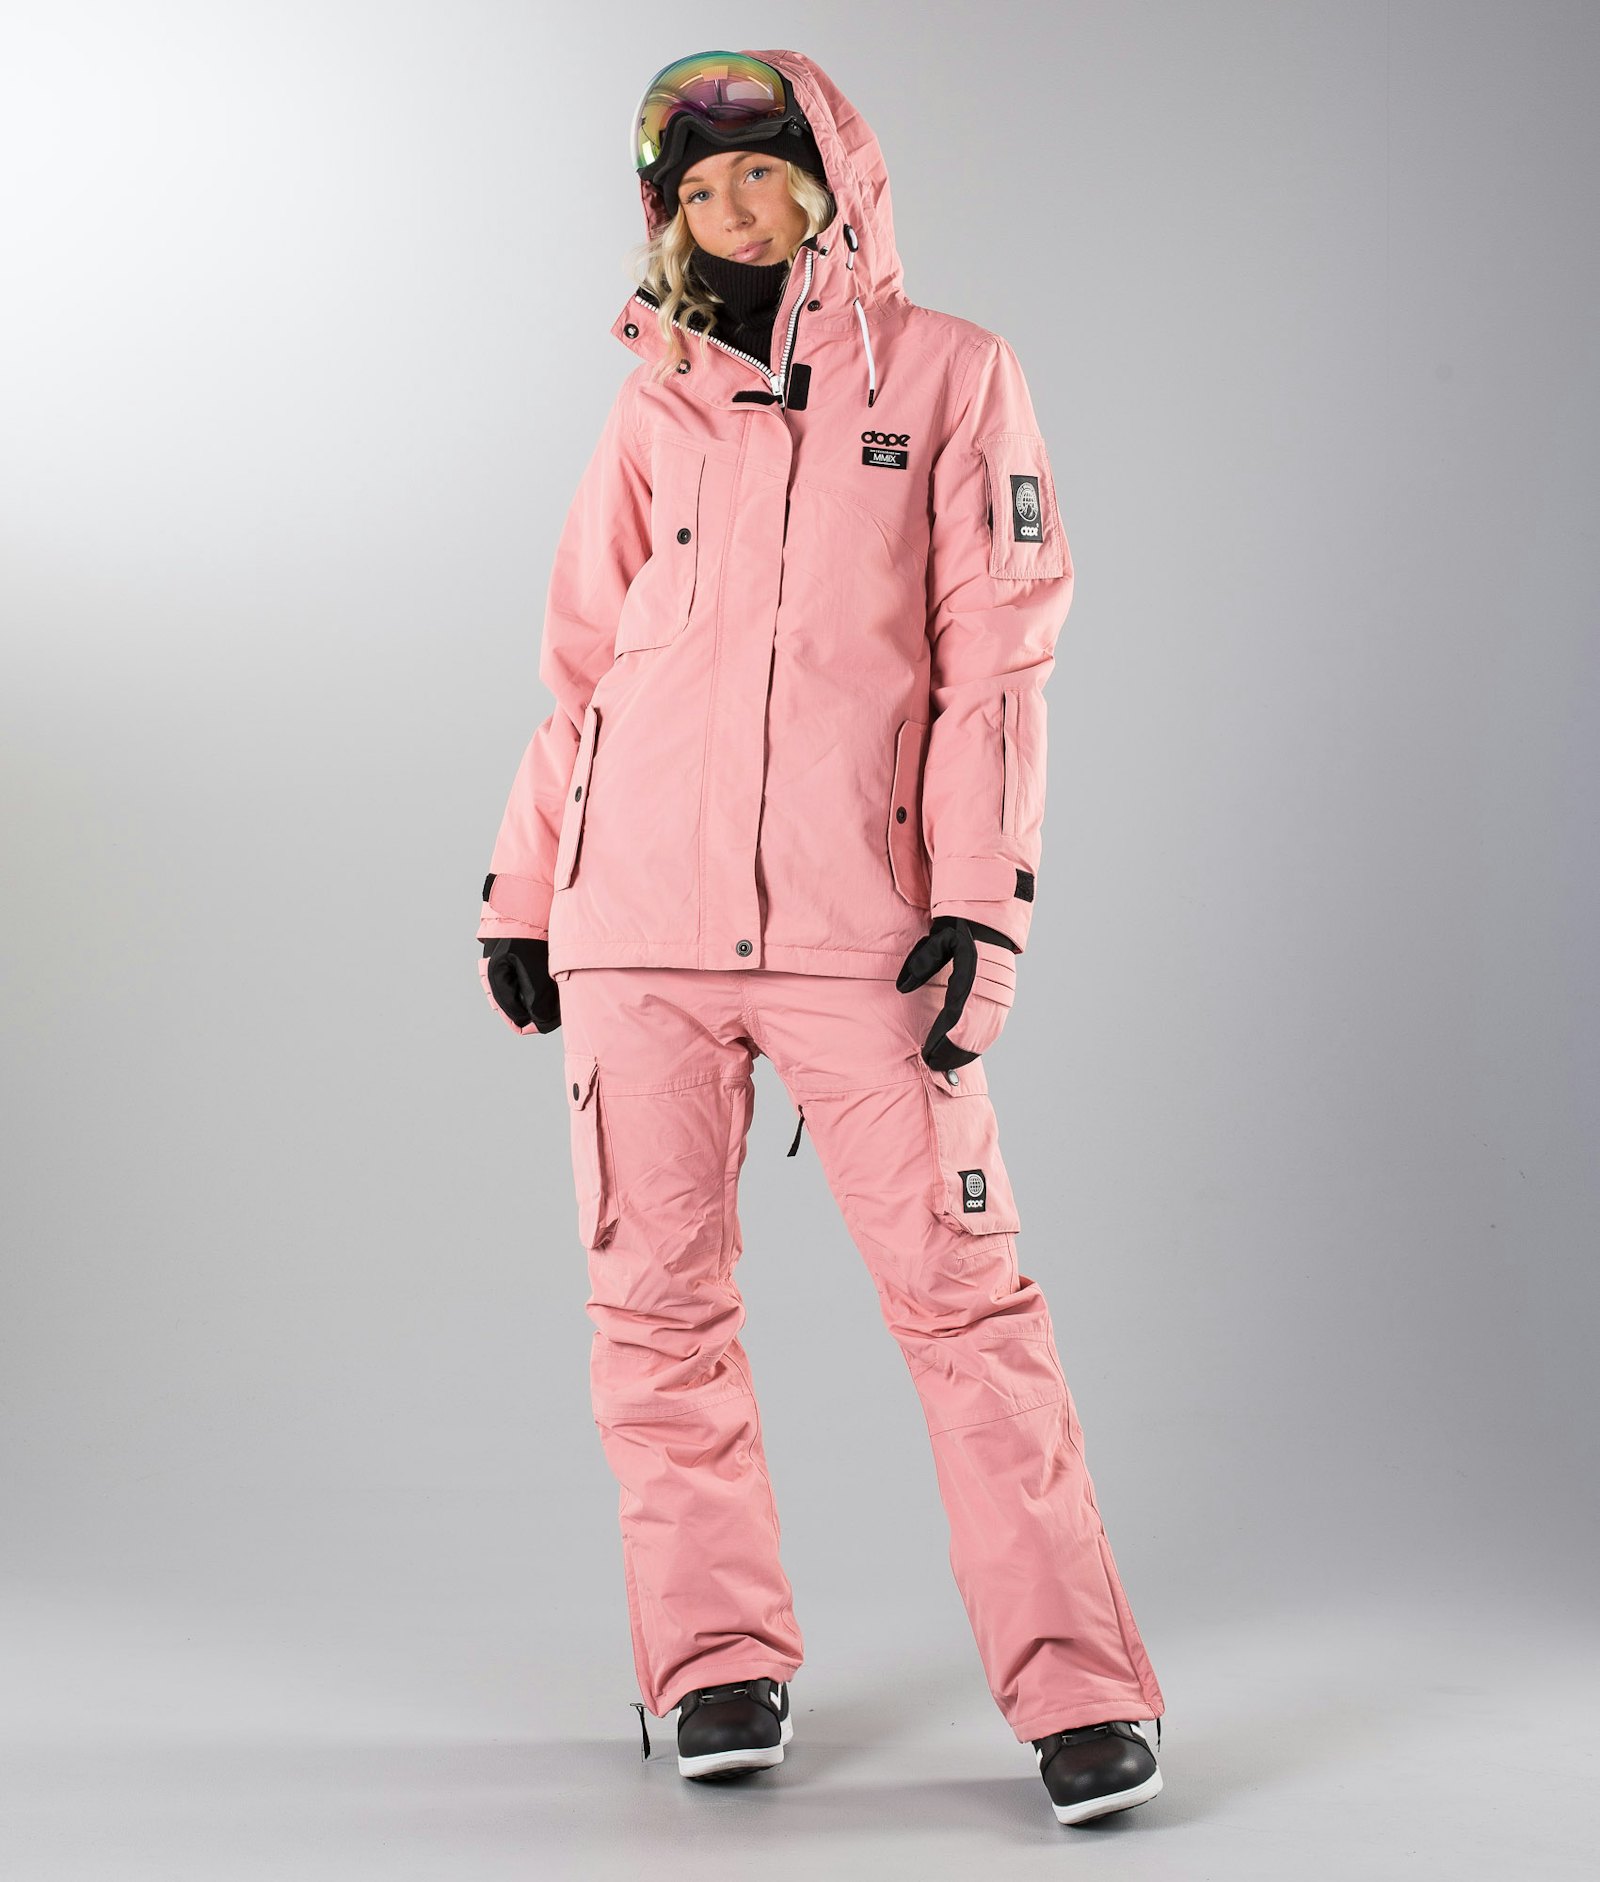 Adept W 2018 Veste Snowboard Femme Pink